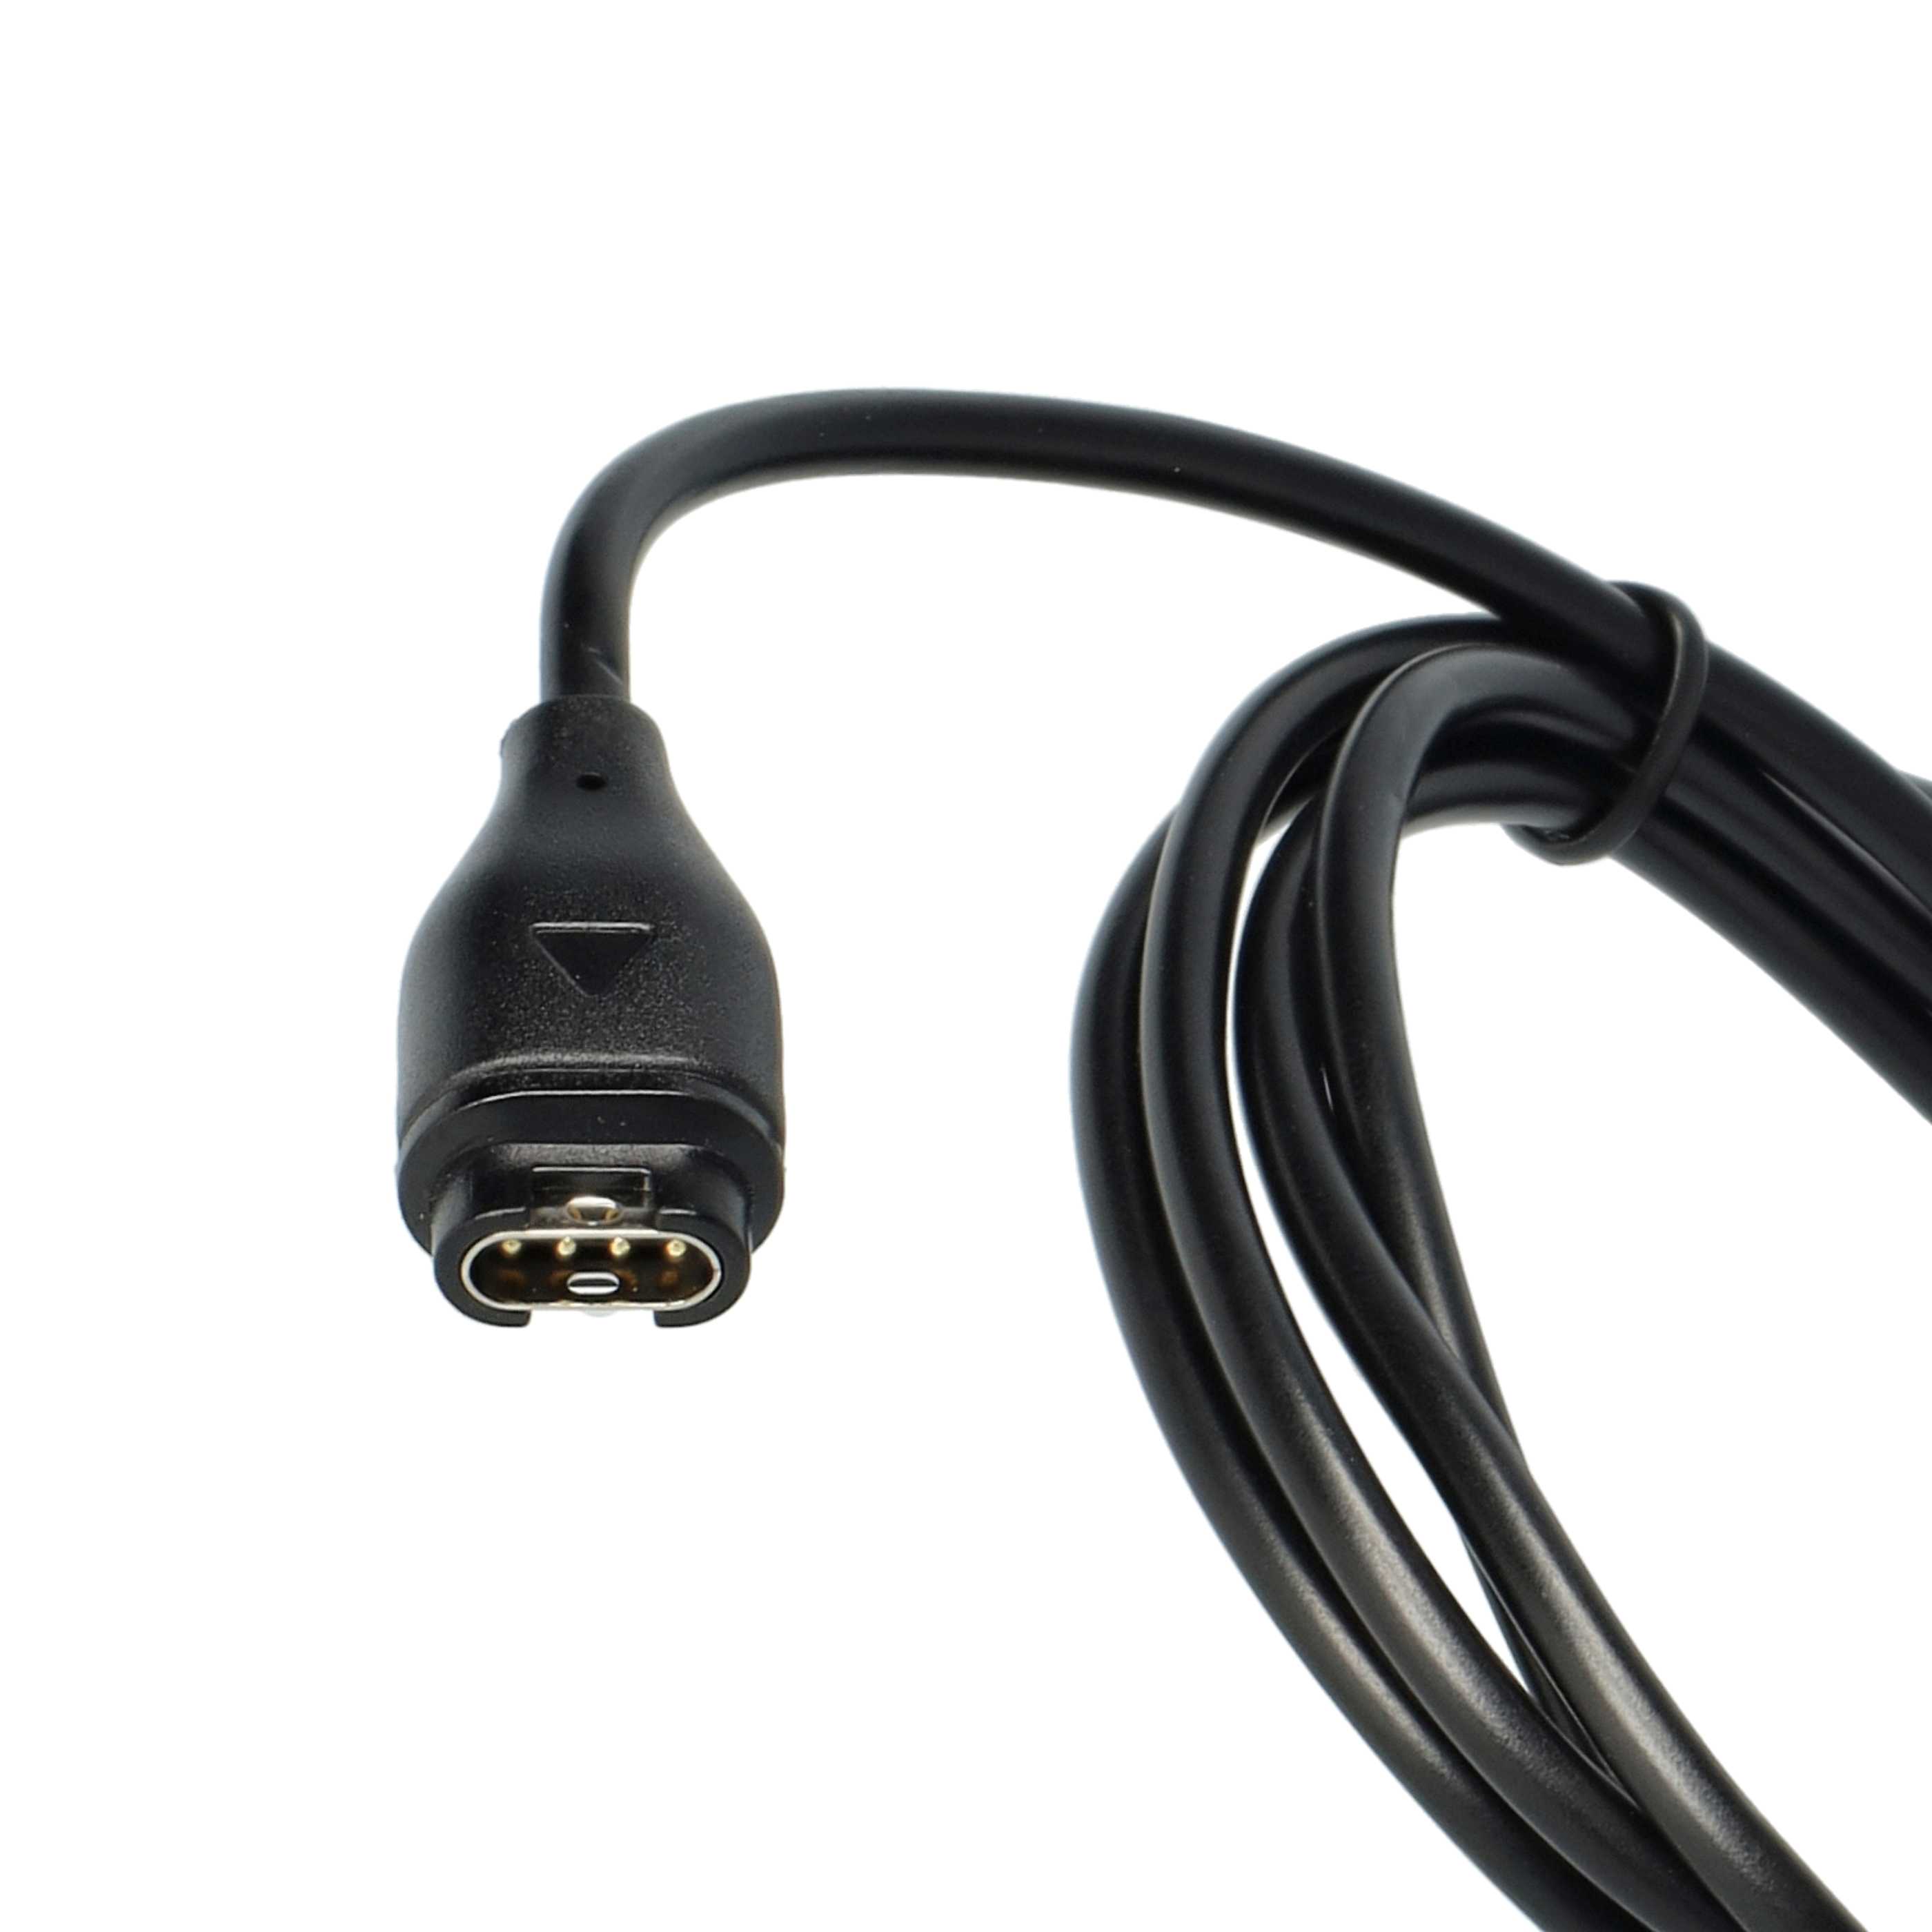 Ladekabel als Ersatz für Garmin 8013048 - 100 cm Kabel